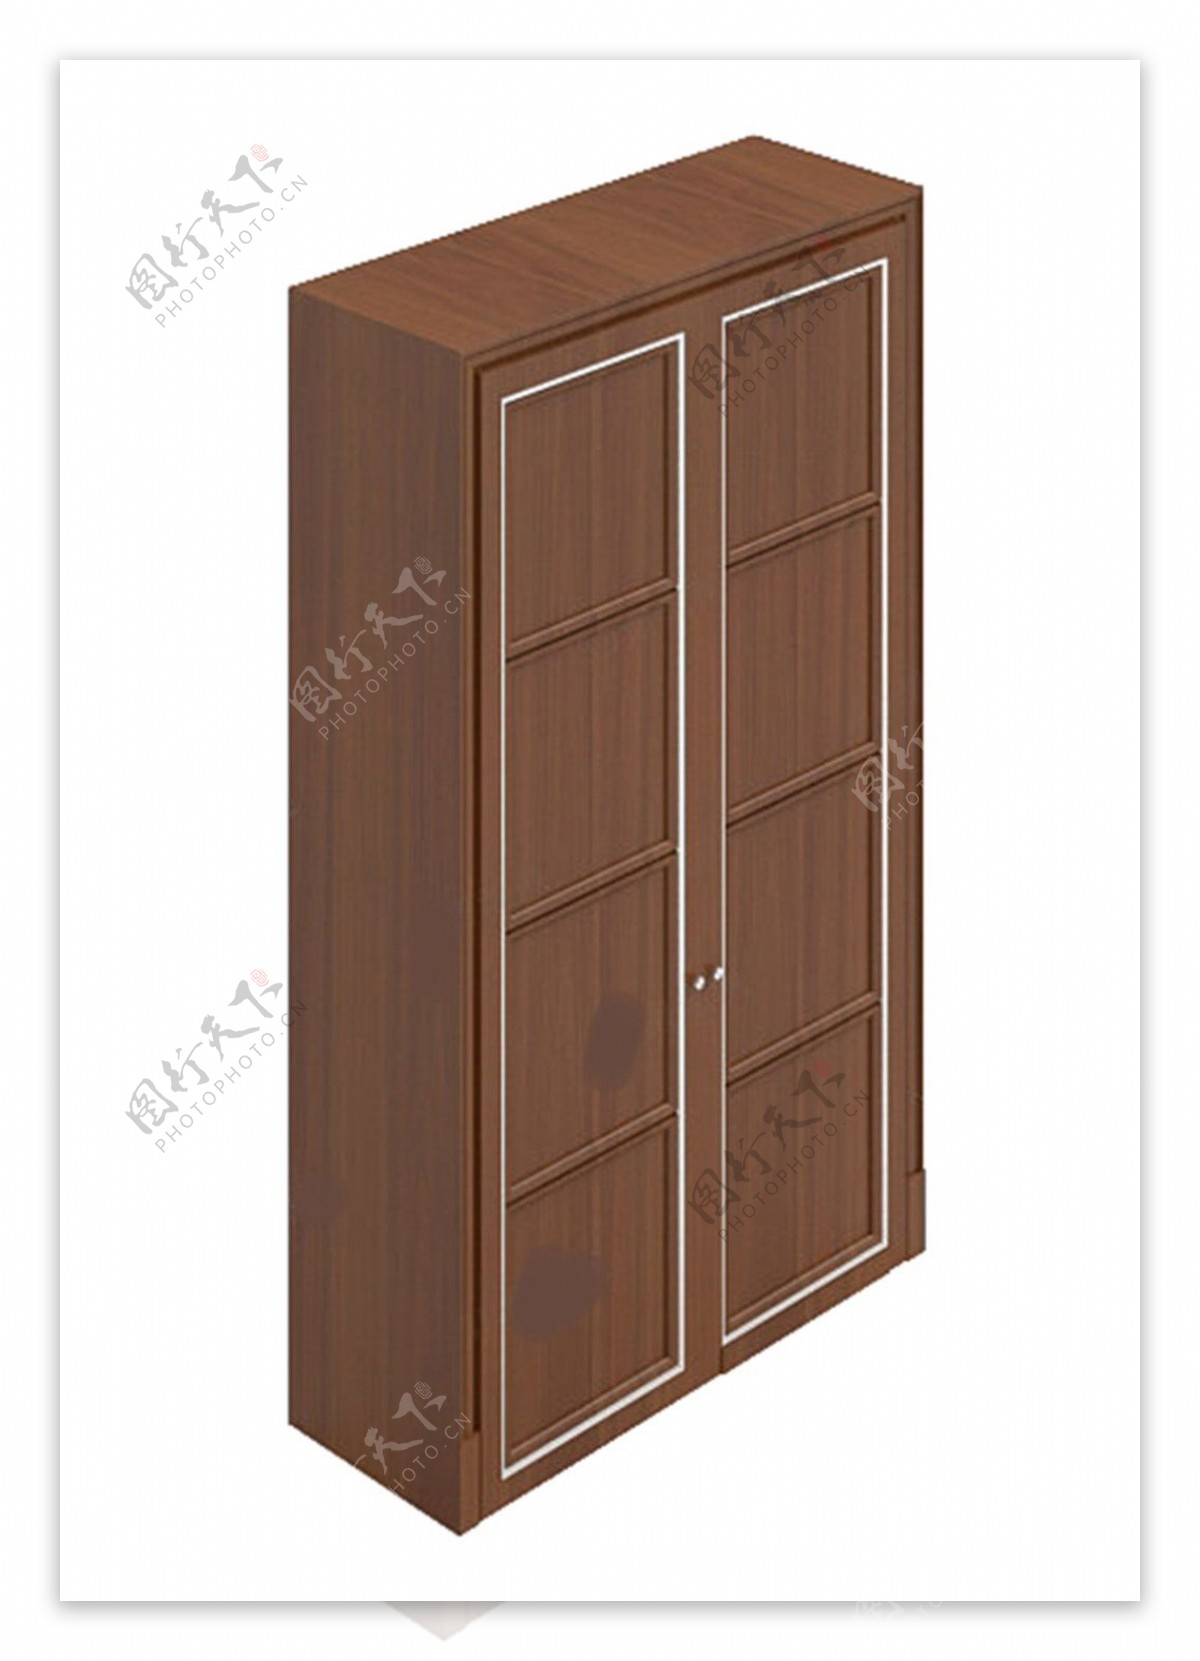 衣柜模型模板下载手柜卧室中式max2009柜门锁